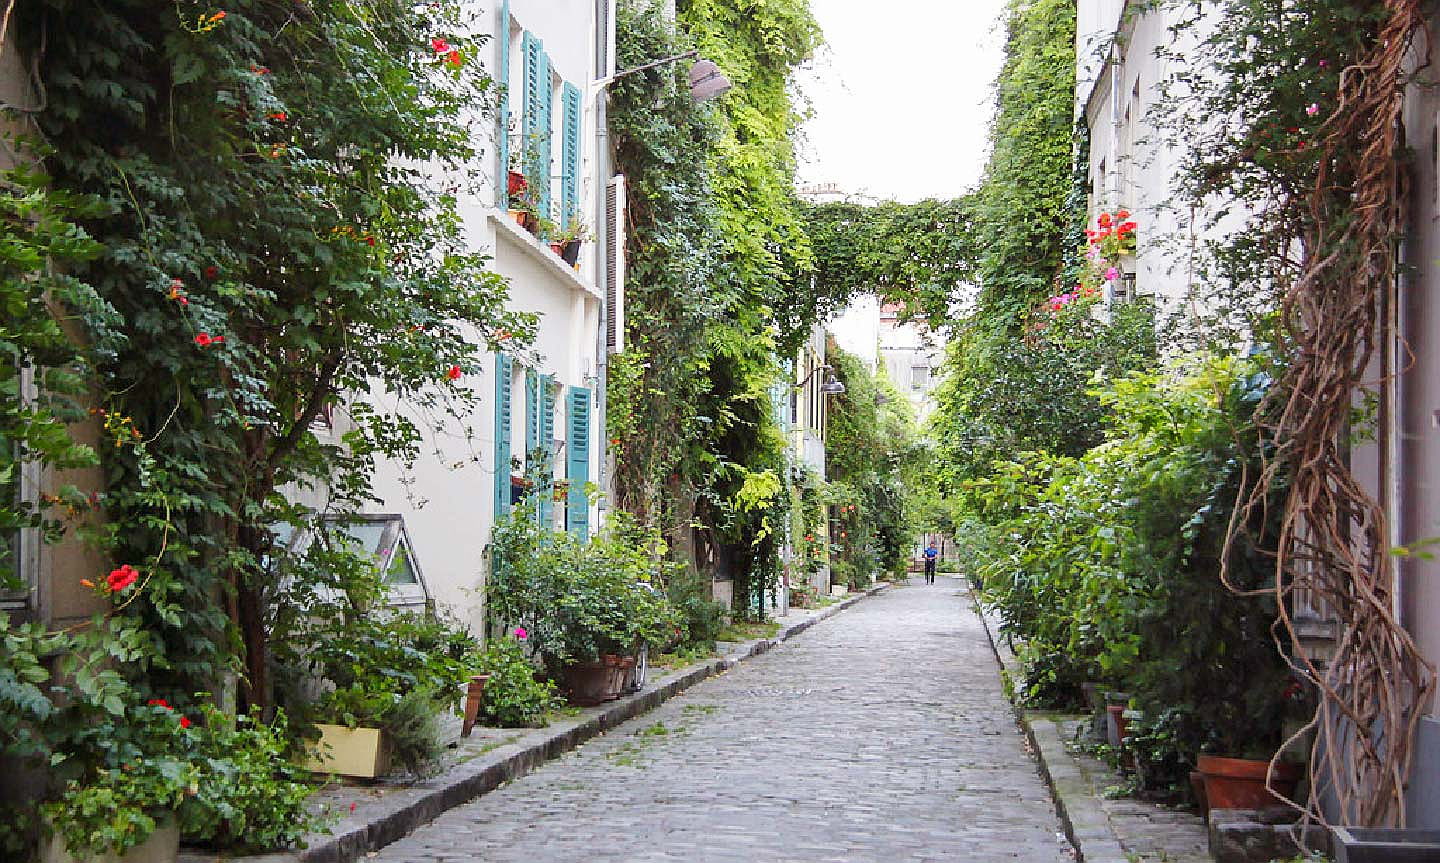  Paris
- real estate paris 14th arrondissement - engel volkers